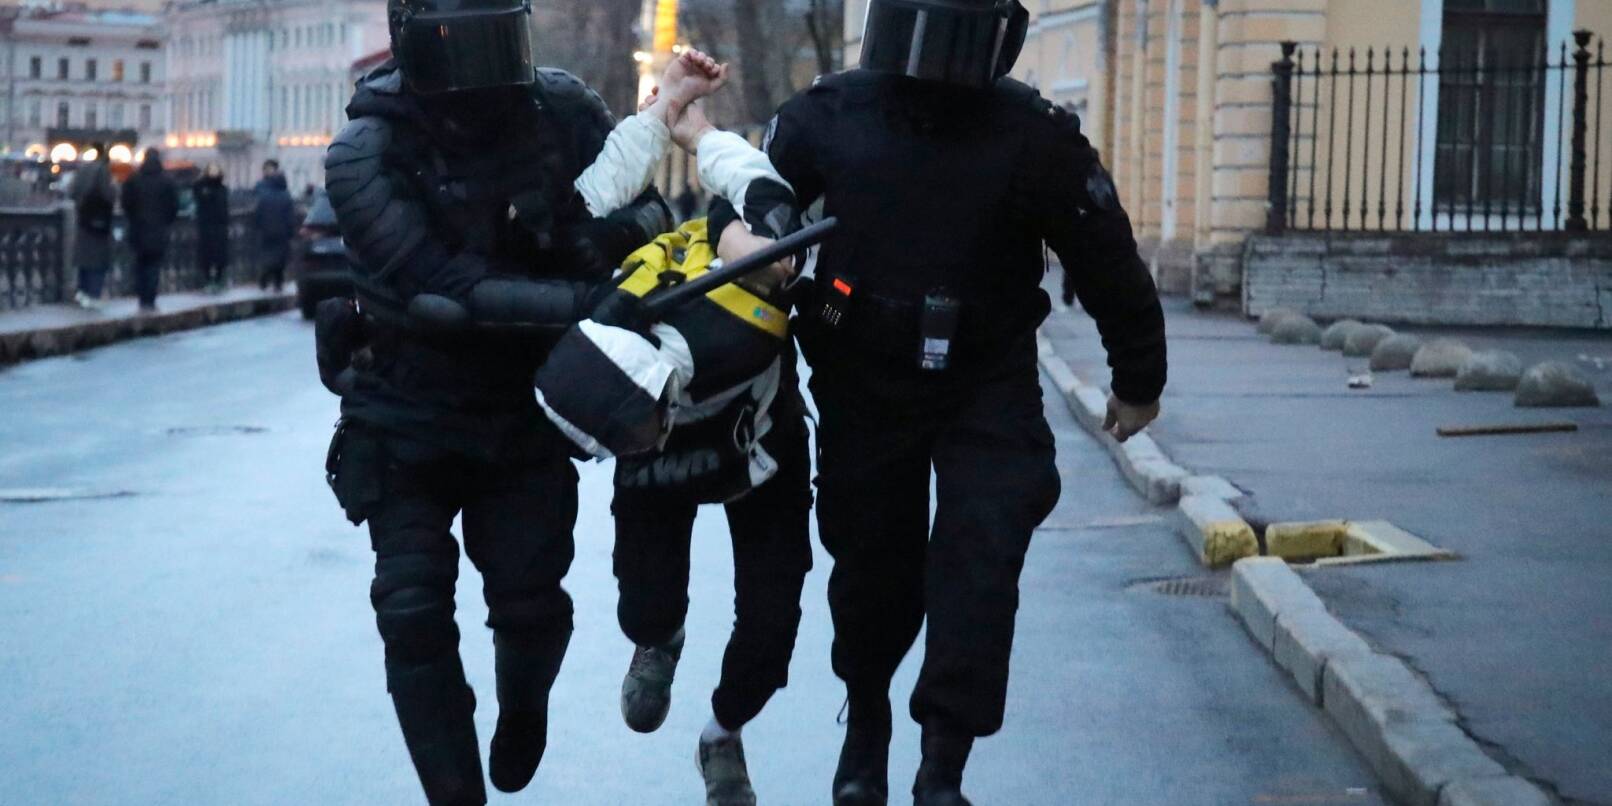 Polizisten verhaftet einen Mann während eines Protestes zur Unterstützung des inhaftierten Oppositionsführers Nawalny.